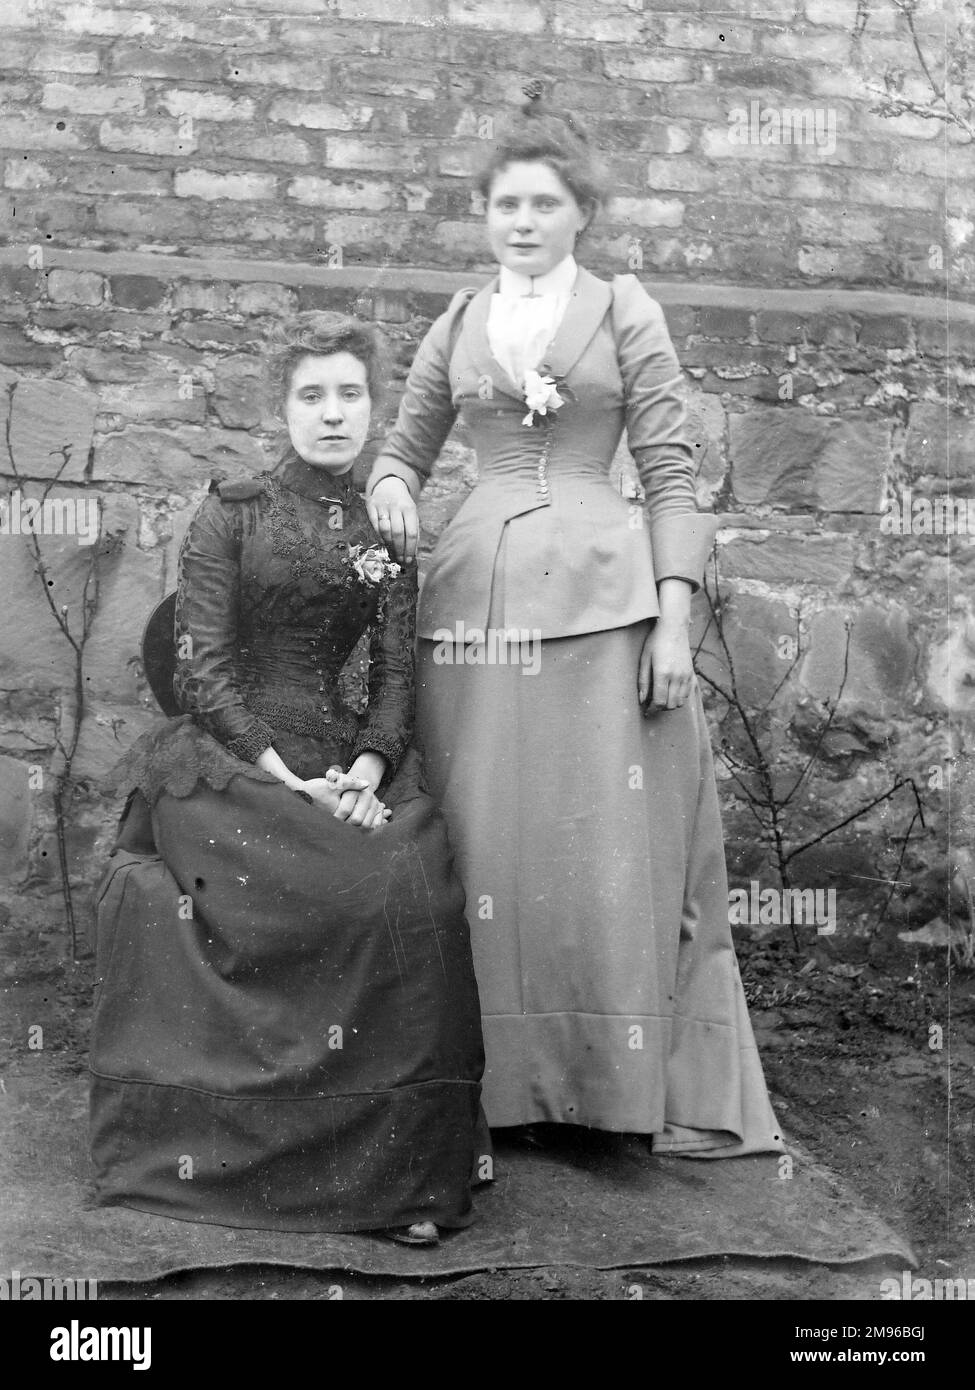 Deux sœurs posent pour leur photo devant un mur de jardin, probablement dans la région du Mid Wales. Ils portent une jupe pleine longueur et une veste ajustée. Banque D'Images